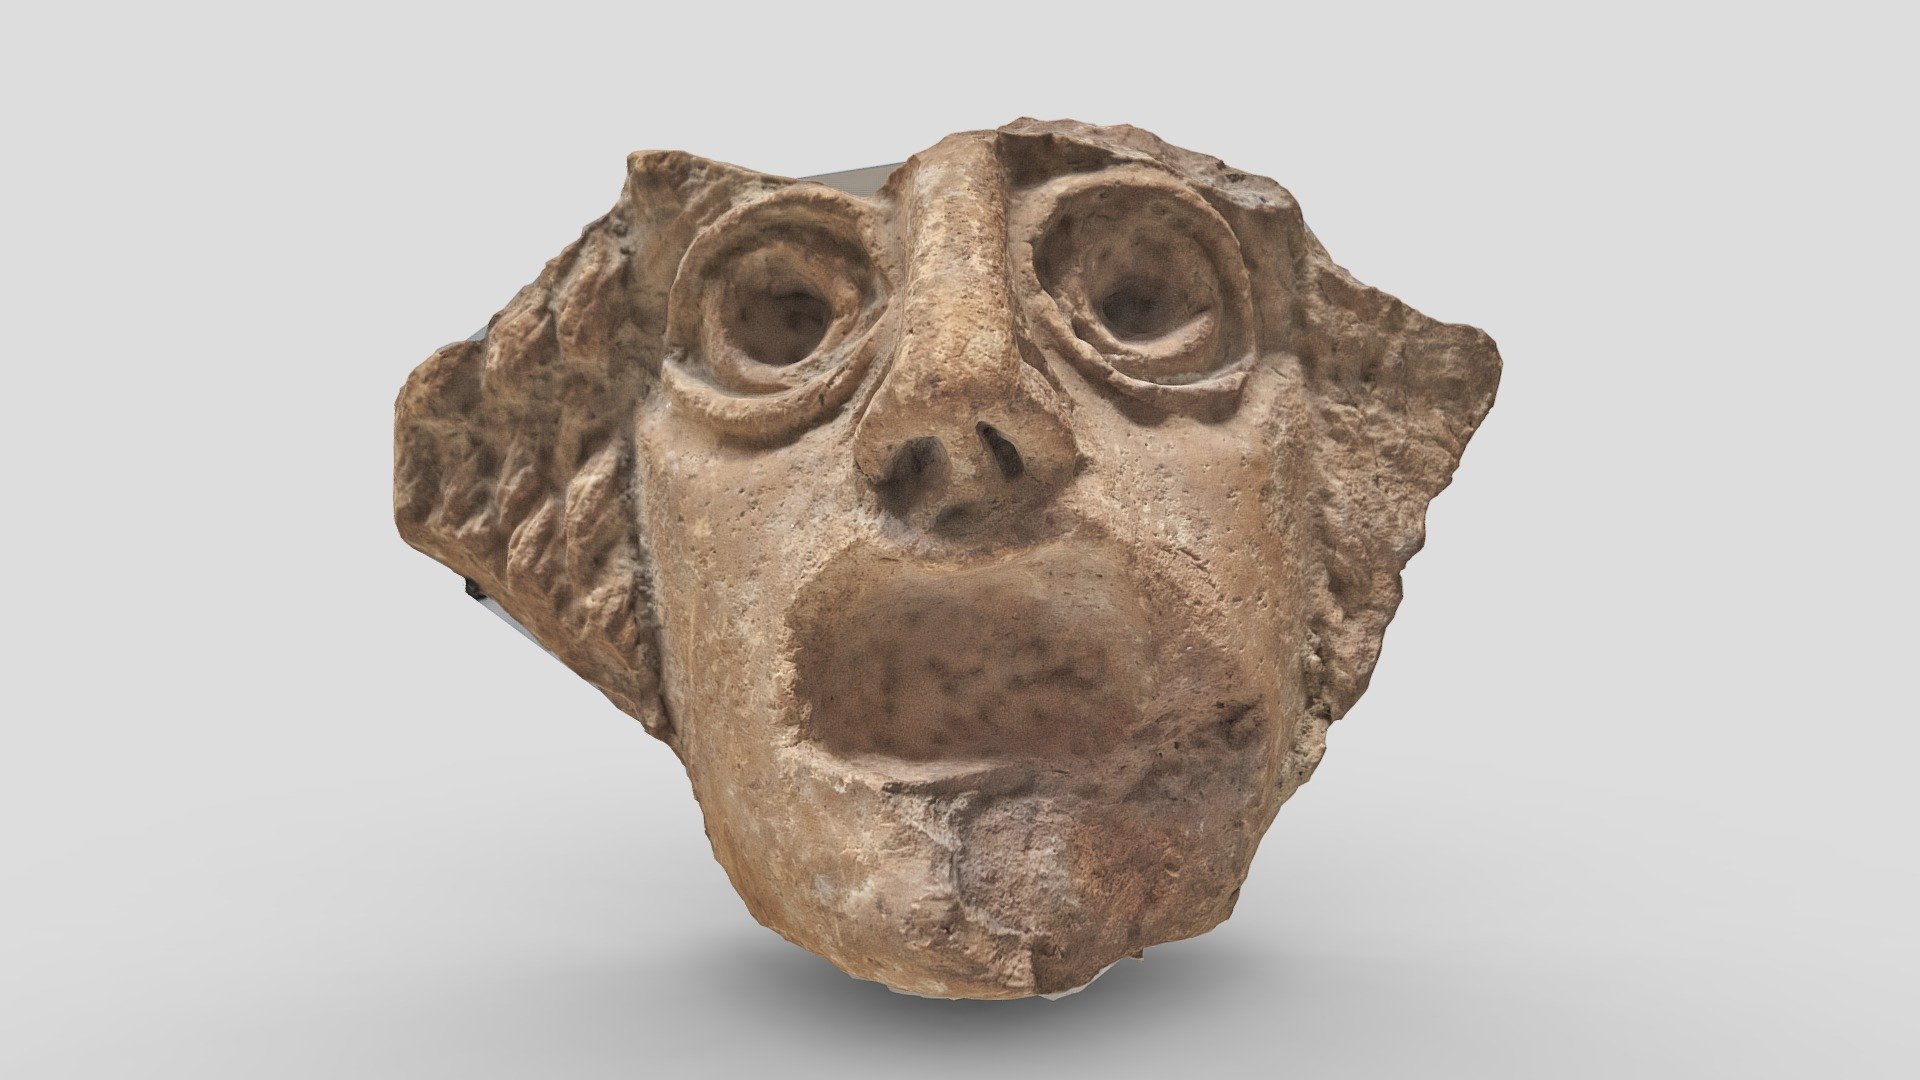 Modèle 3D d'un masque de de théatre de la période romaine généré par le programme de photogrammétrie 3DF Zephyr v5.016 processing 38 images - Masque de théatre - 3D model by Frédérique Bertrand - 3D Imago Urbis (@fre3darchi) 3d model